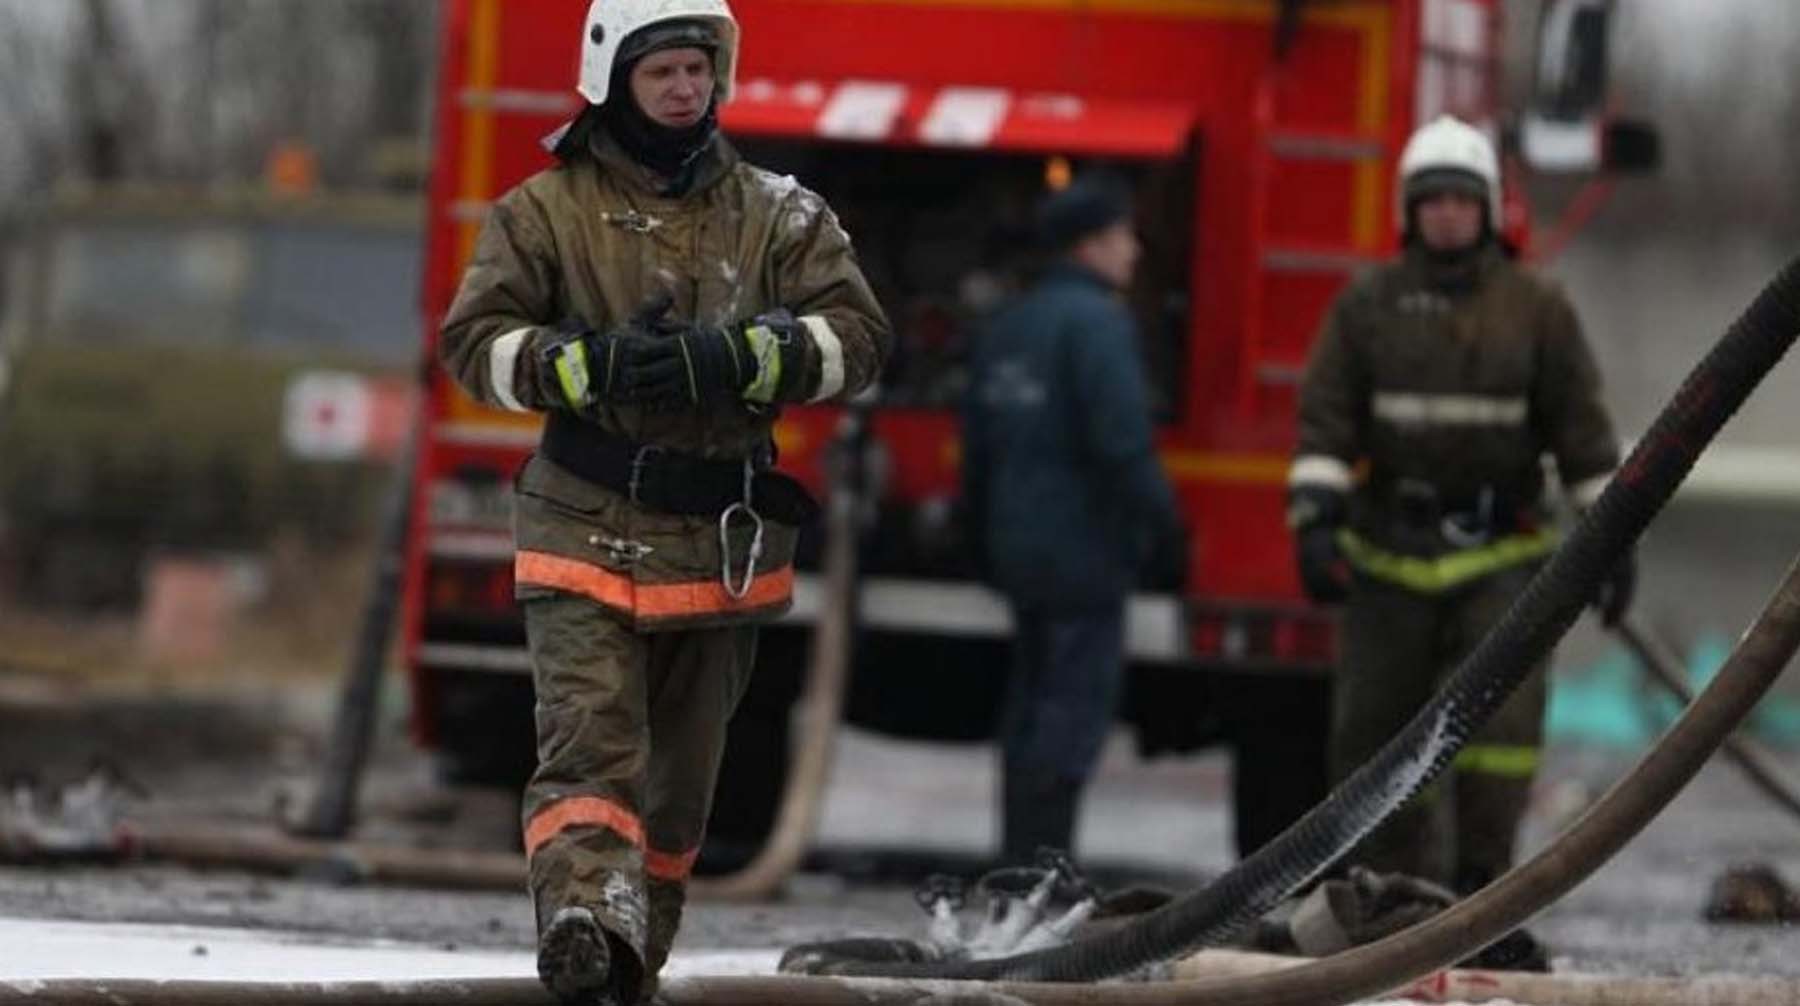 Dailystorm - Сгорели в деревянном доме: четверо детей погибли в Свердловской области